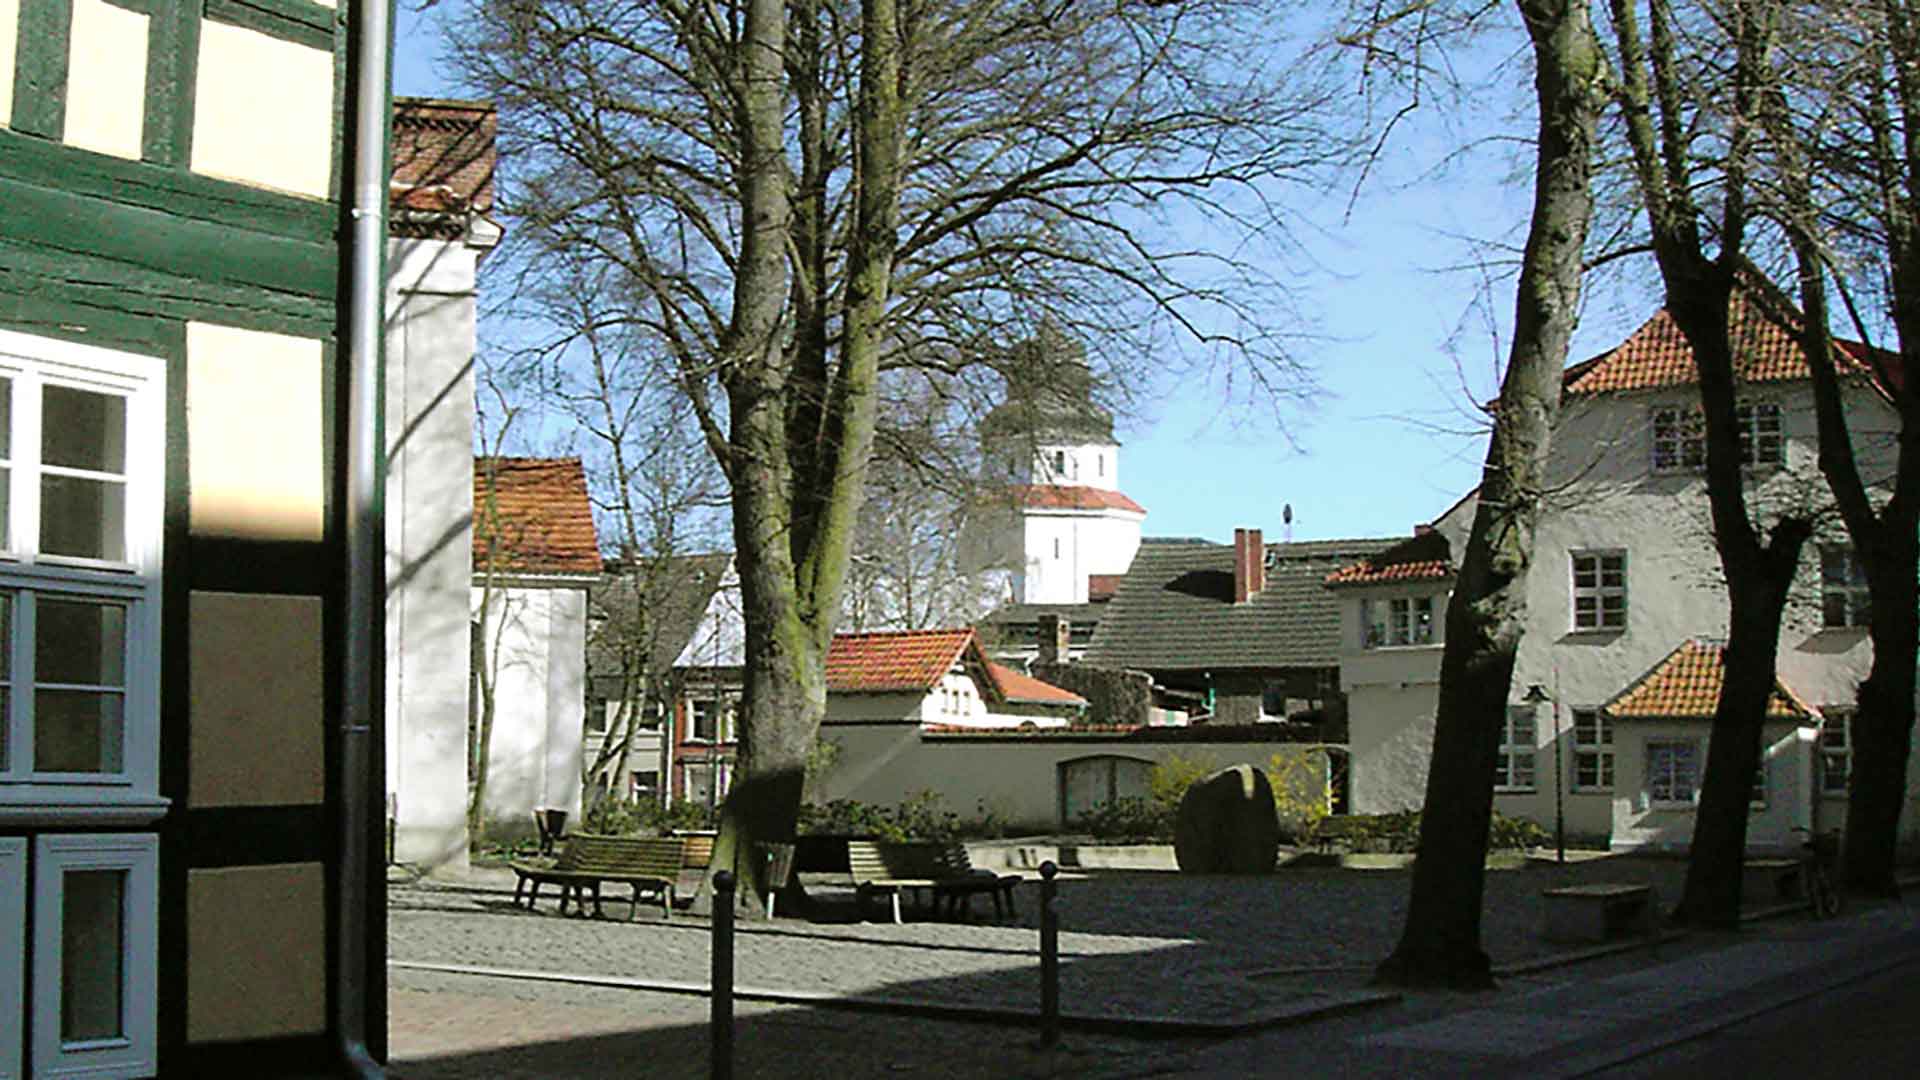 Haffmuseum mit Rathaus